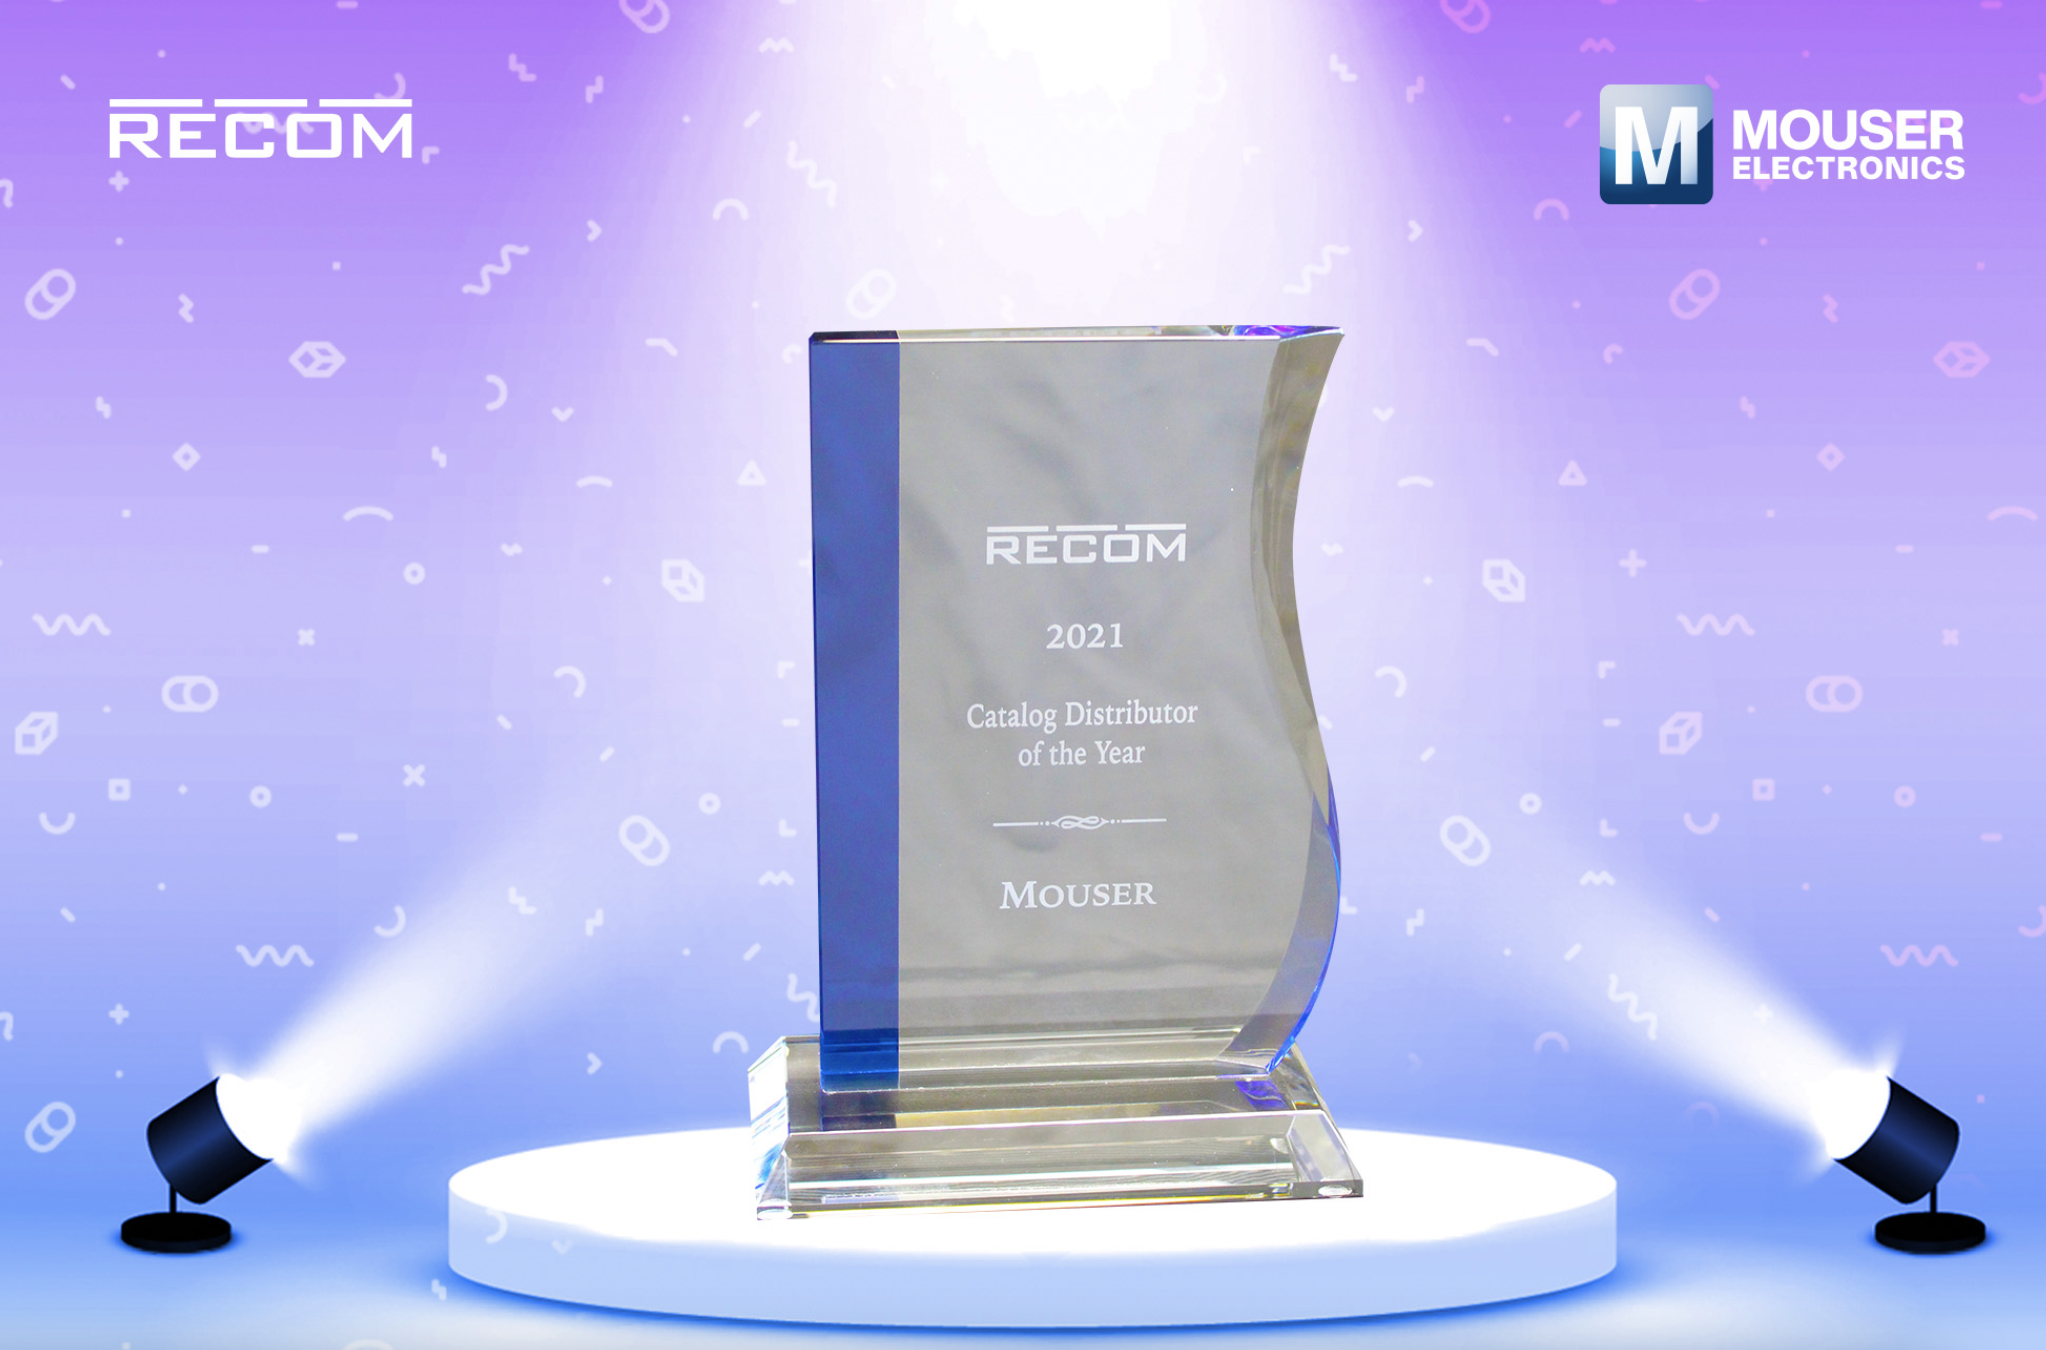 贸泽荣获2021年度RECOM目录分销商奖表彰在NPI和客户增长方面的突出表现